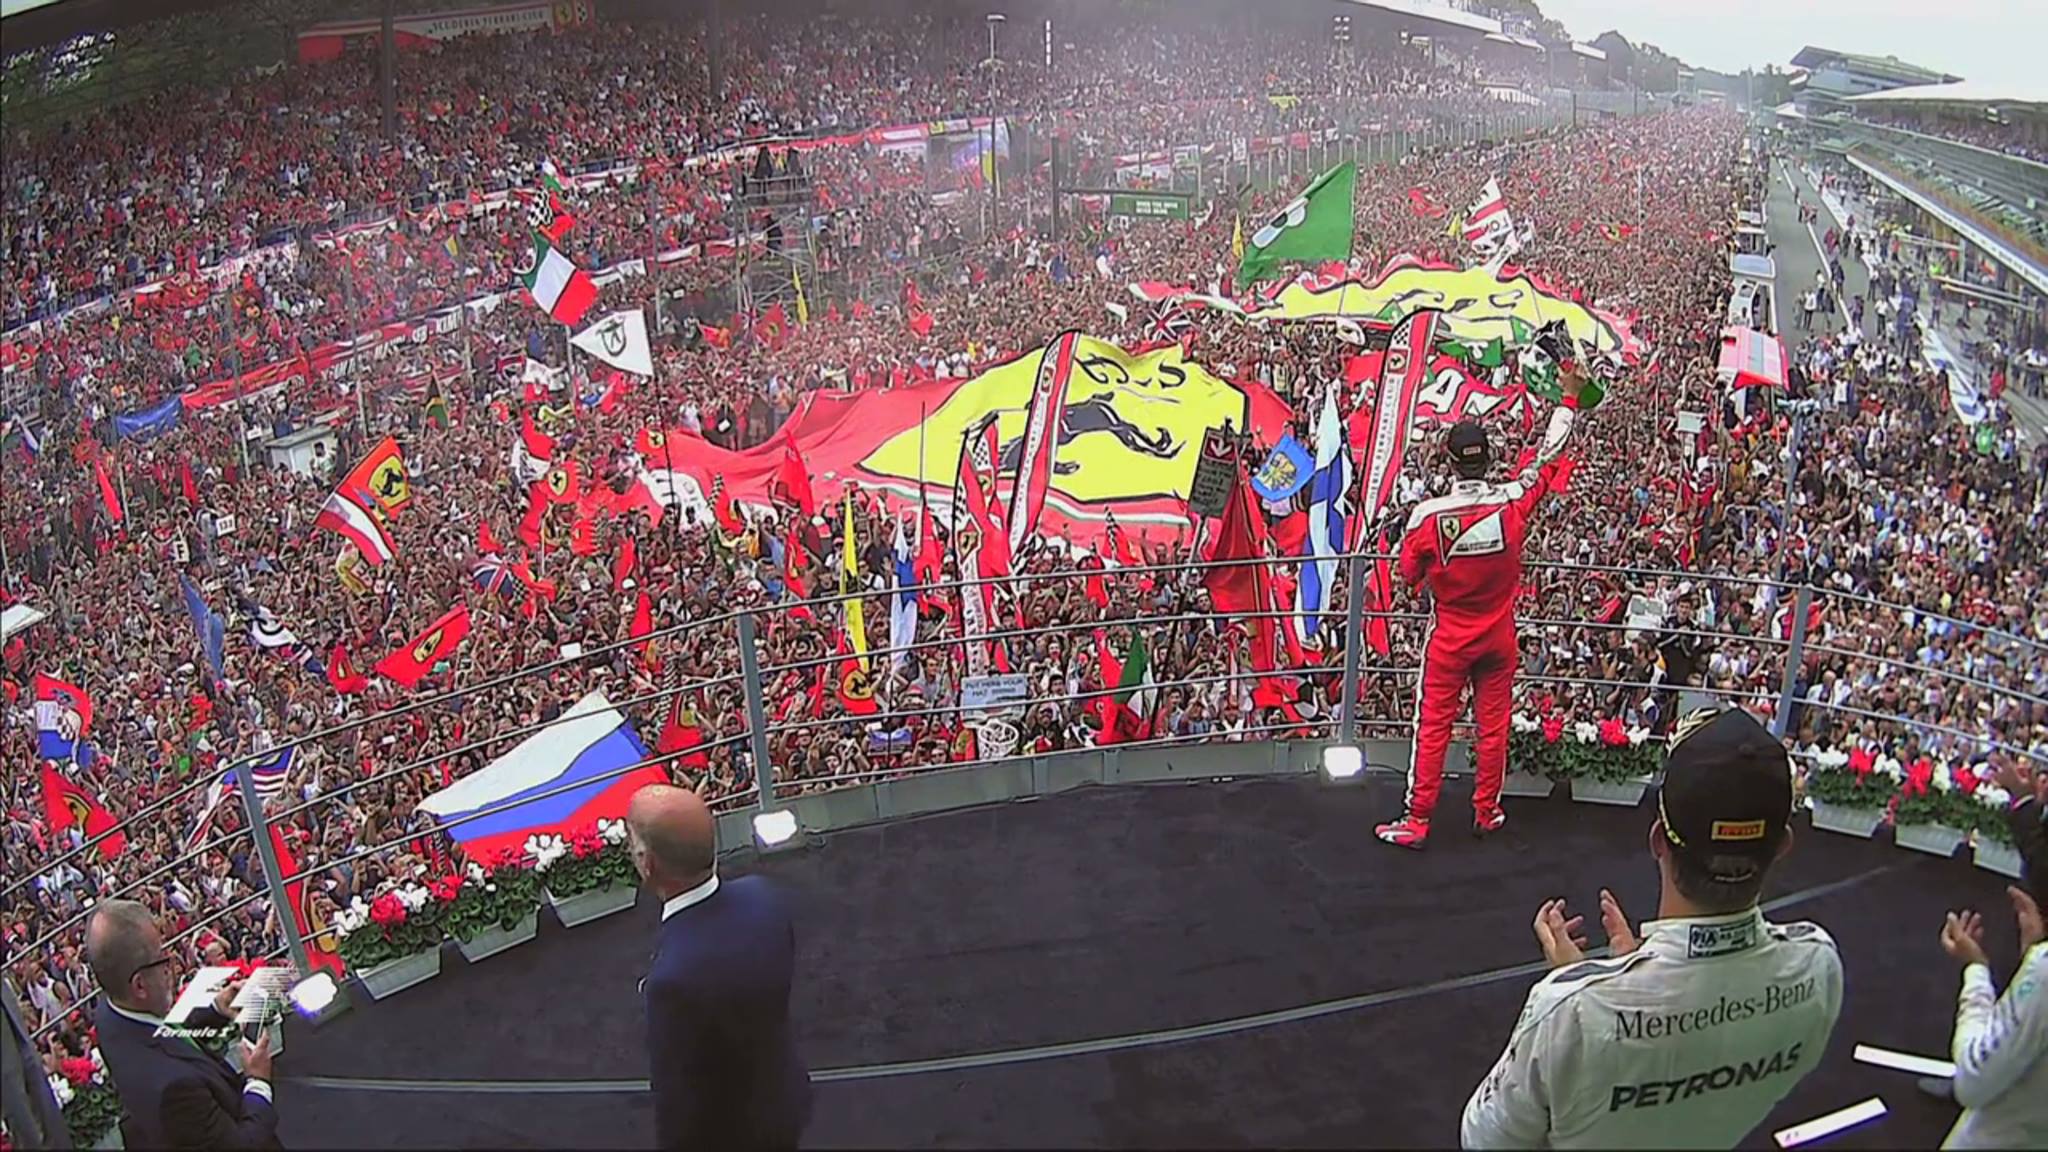 Monza Grand Prix: the Ferrari home